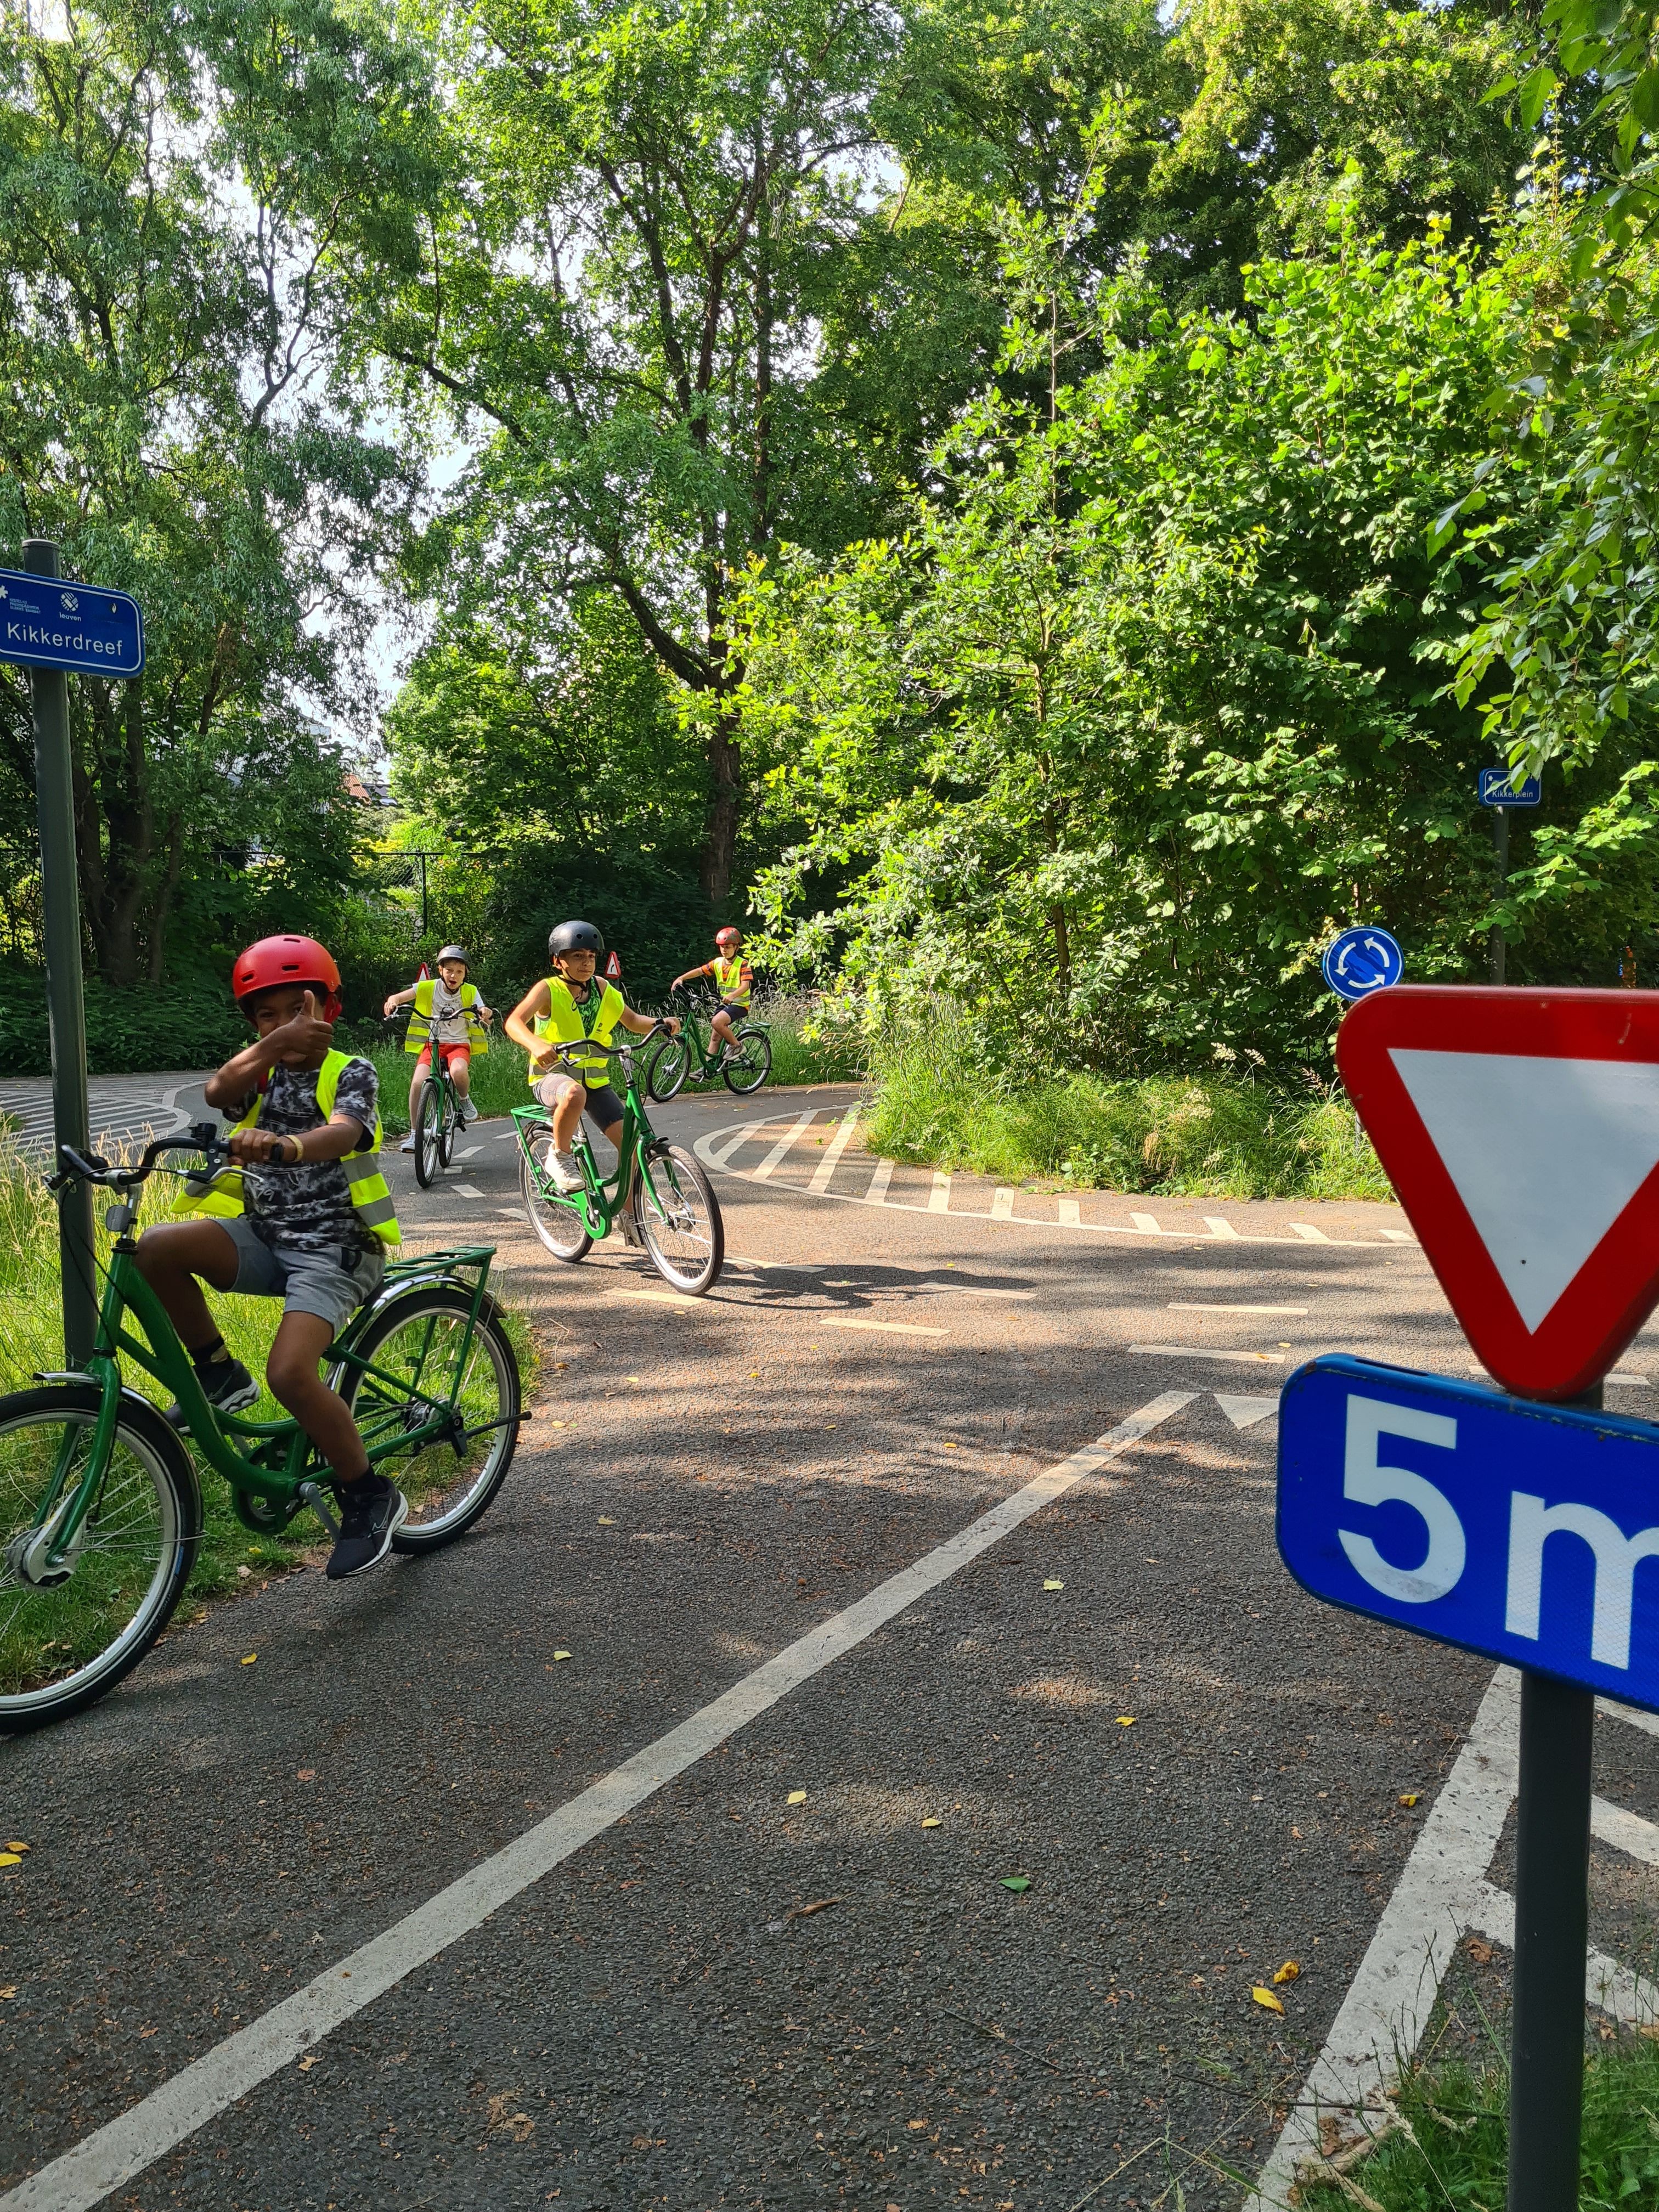 Scholen maken gebruik van het verkeerspark in domein Kessel-Lo.